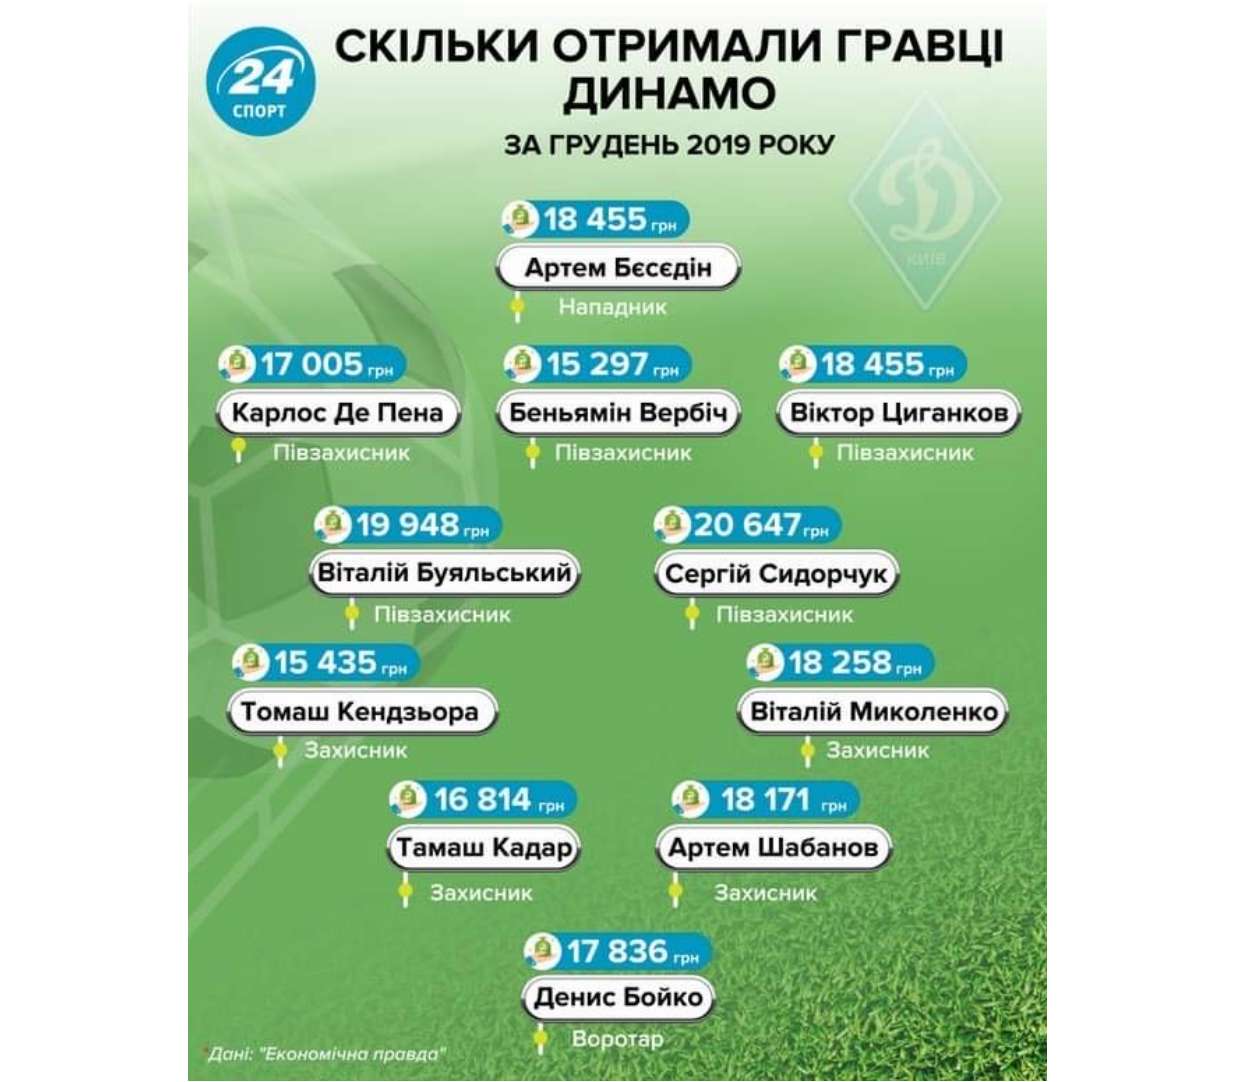 Из-за Суркисов Беседин не получит от УЕФА денежной компенсации за травму - фото 2